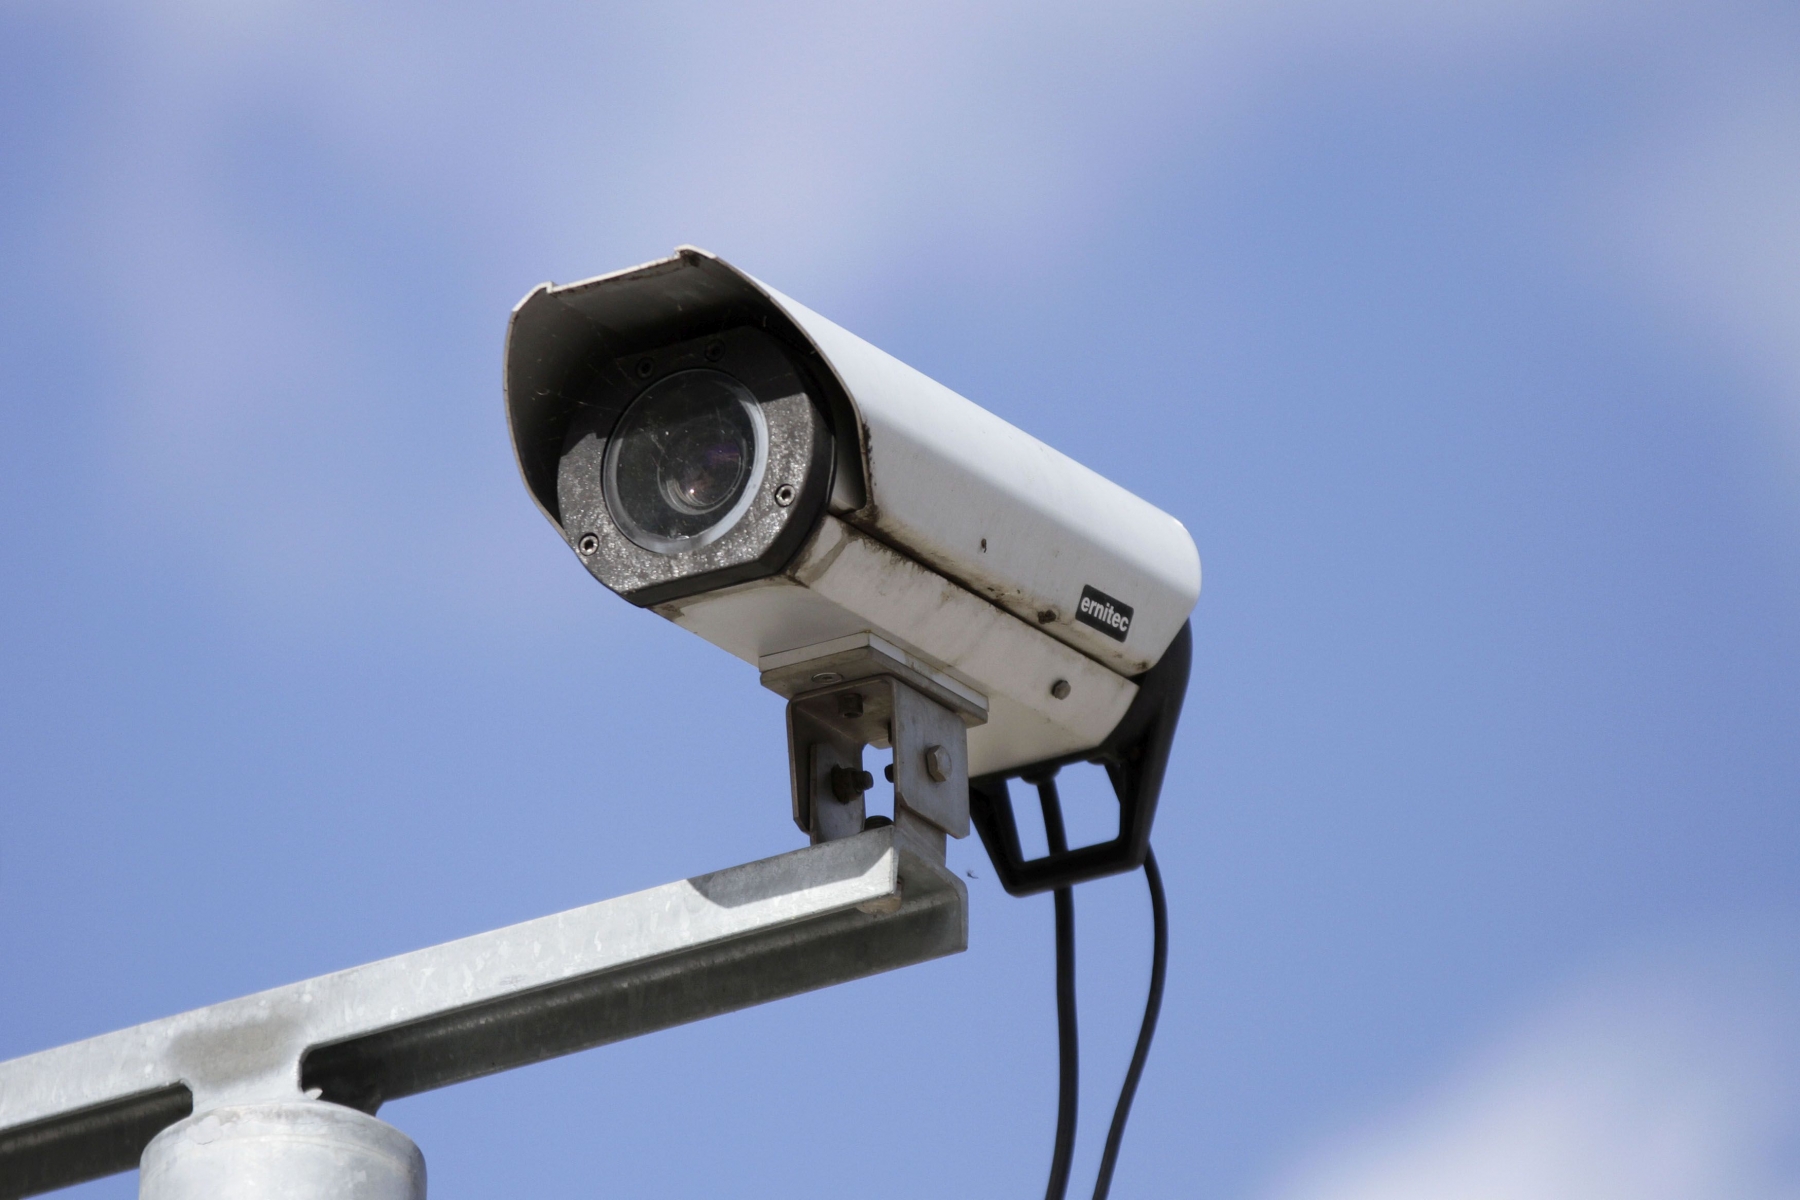 Le sentiment de sécurité des participants à l'enquête s'est renforcé depuis la mise en service des caméras, en particulier pendant la nuit.